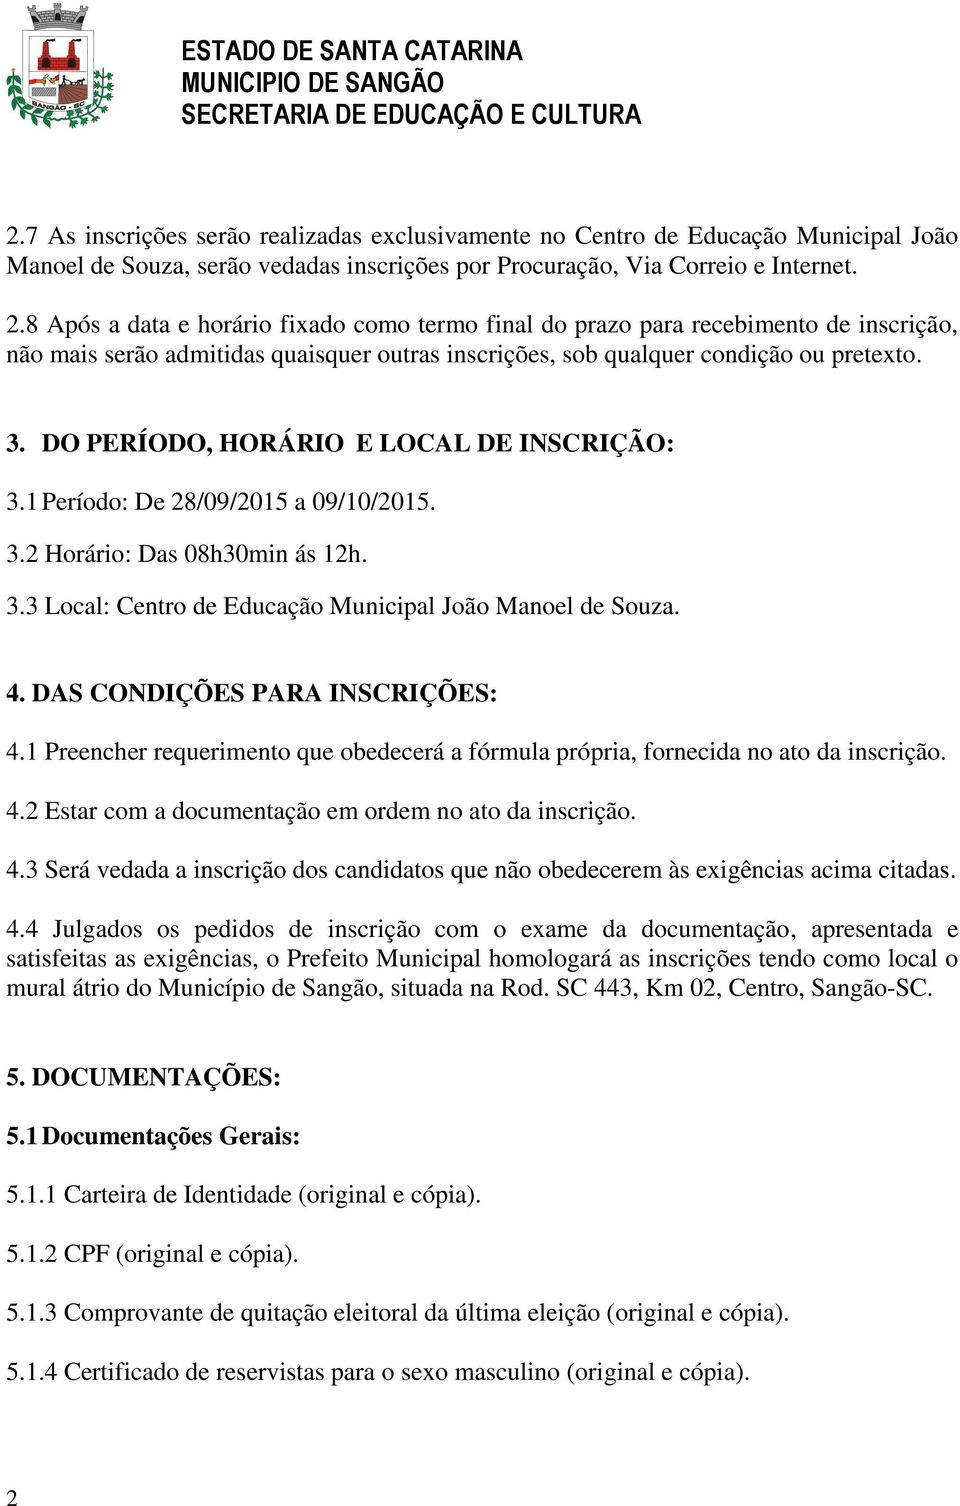 DO PERÍODO, HORÁRIO E LOCAL DE INSCRIÇÃO: 3.1 Período: De 28/09/2015 a 09/10/2015. 3.2 Horário: Das 08h30min ás 12h. 3.3 Local: Centro de Educação Municipal João Manoel de Souza. 4.